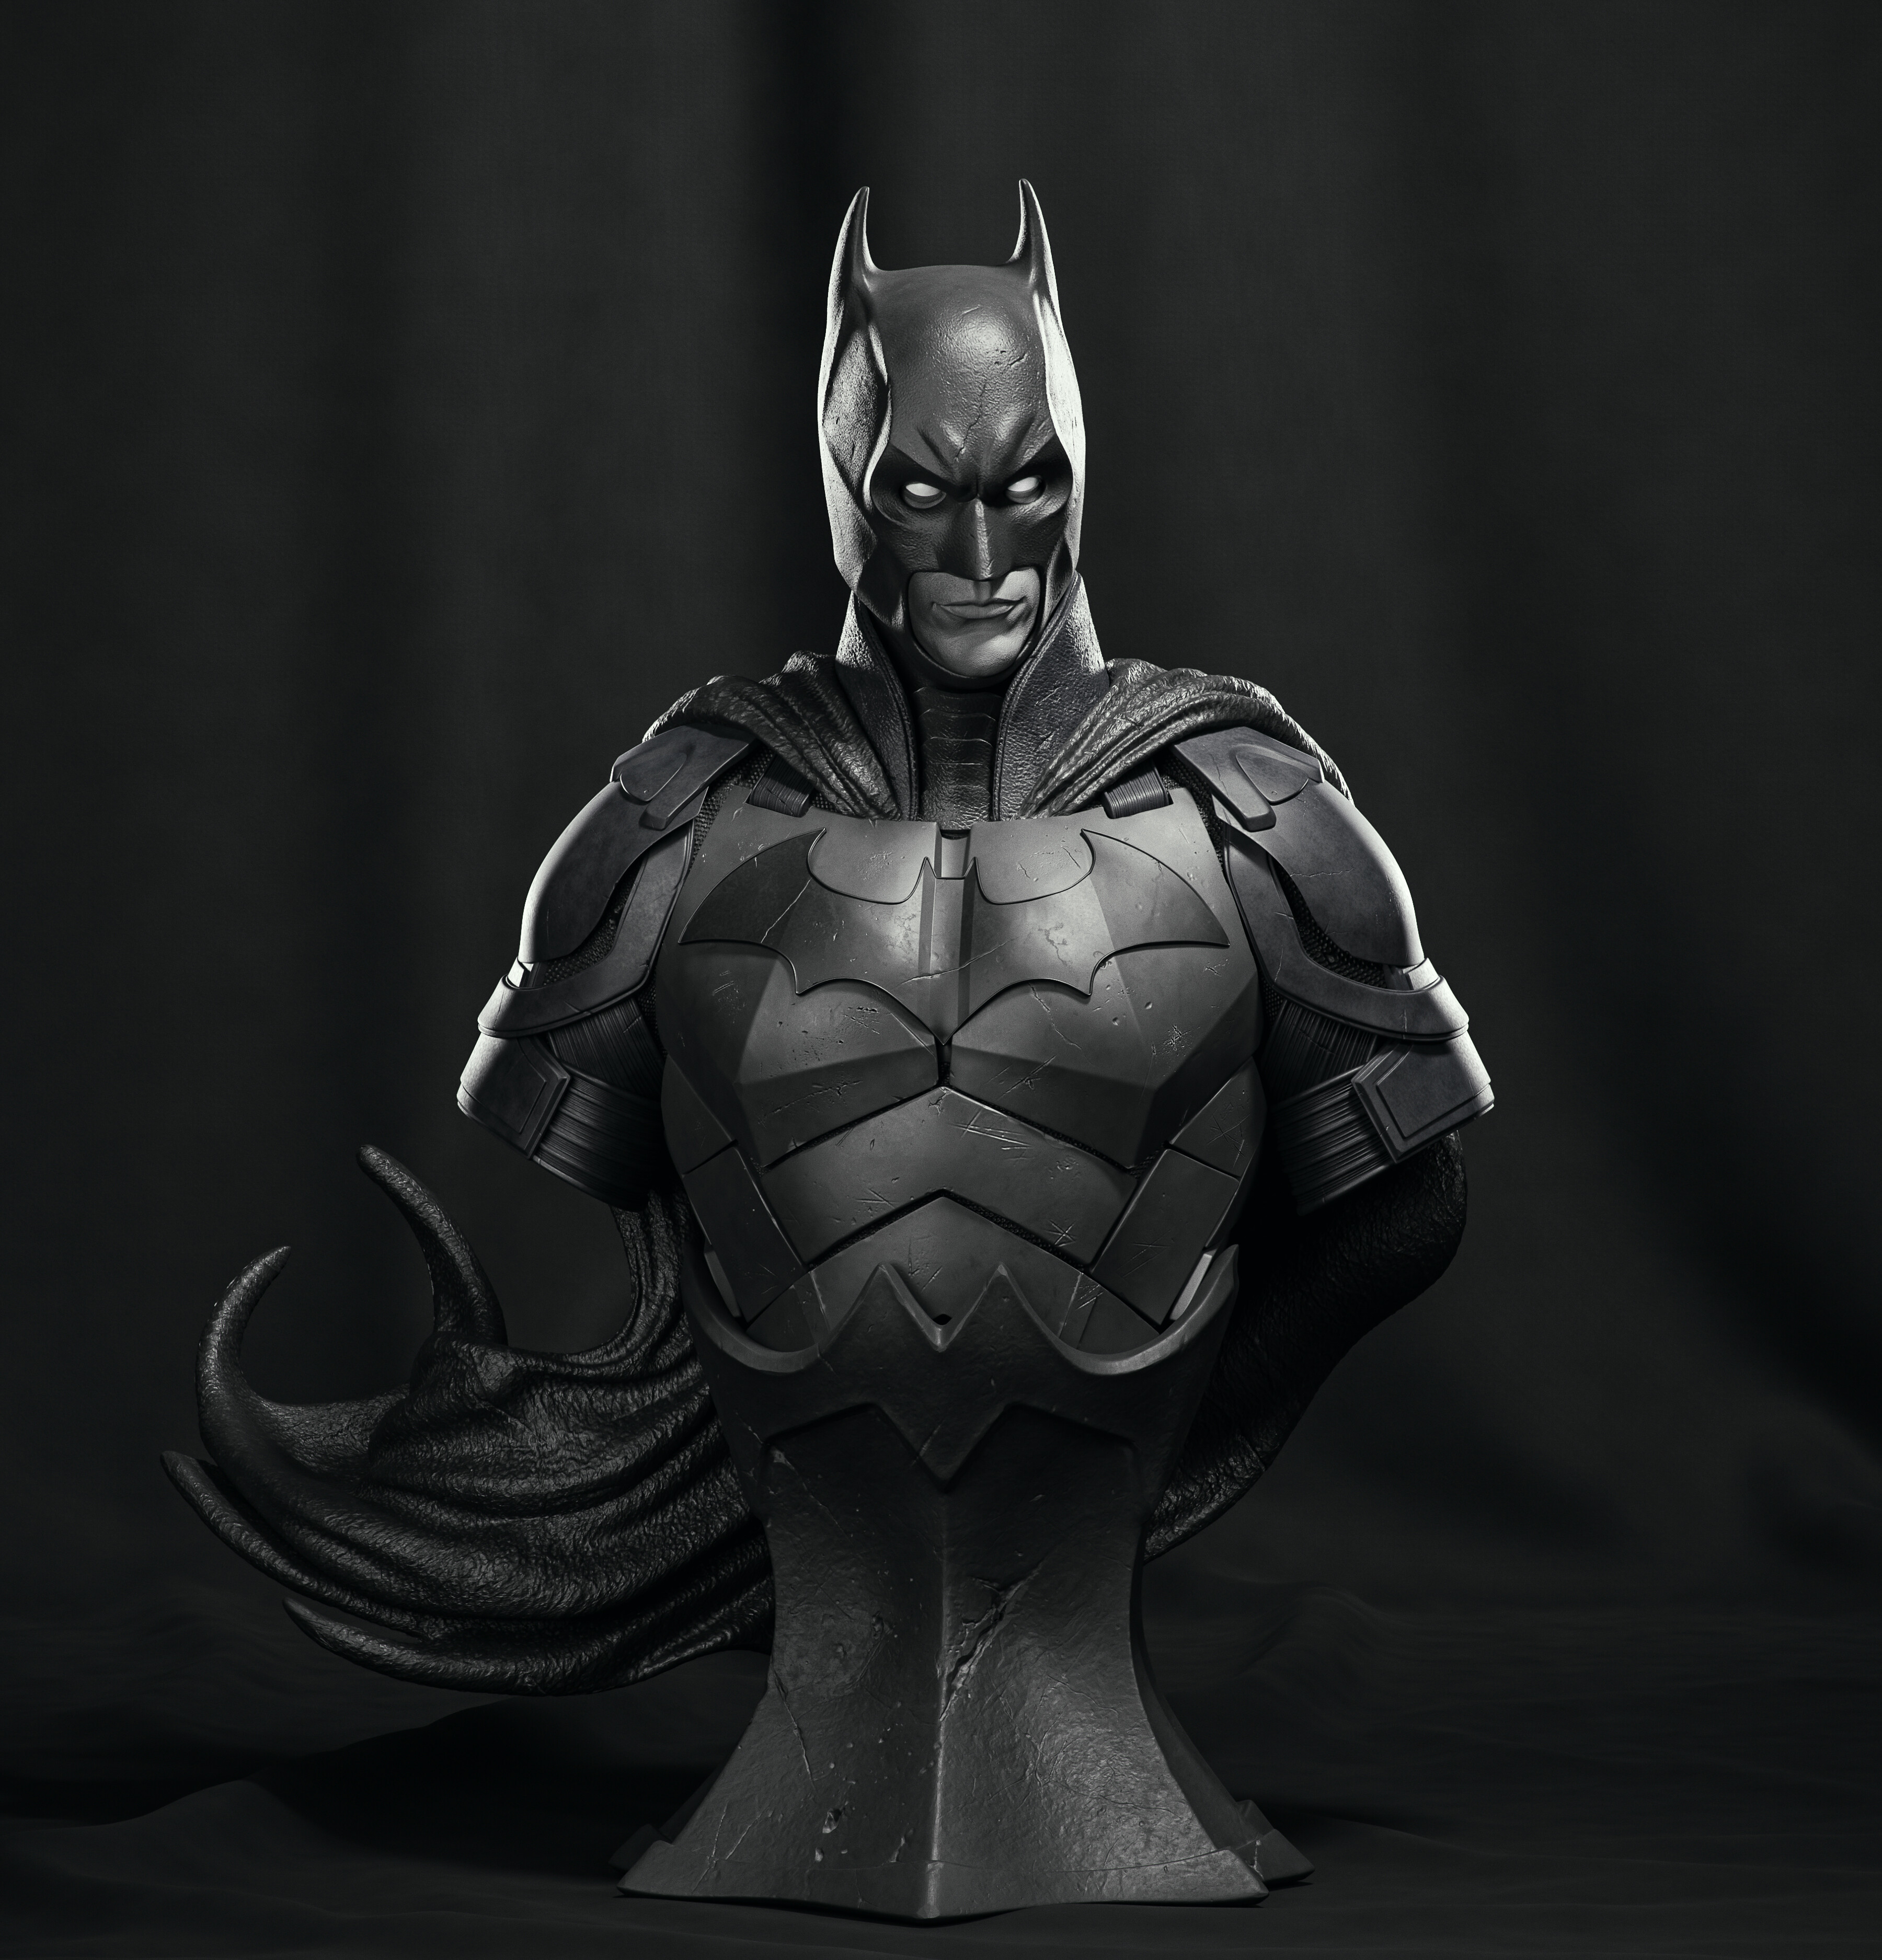 Batman bust fan art - Finished Projects - Blender Artists Community